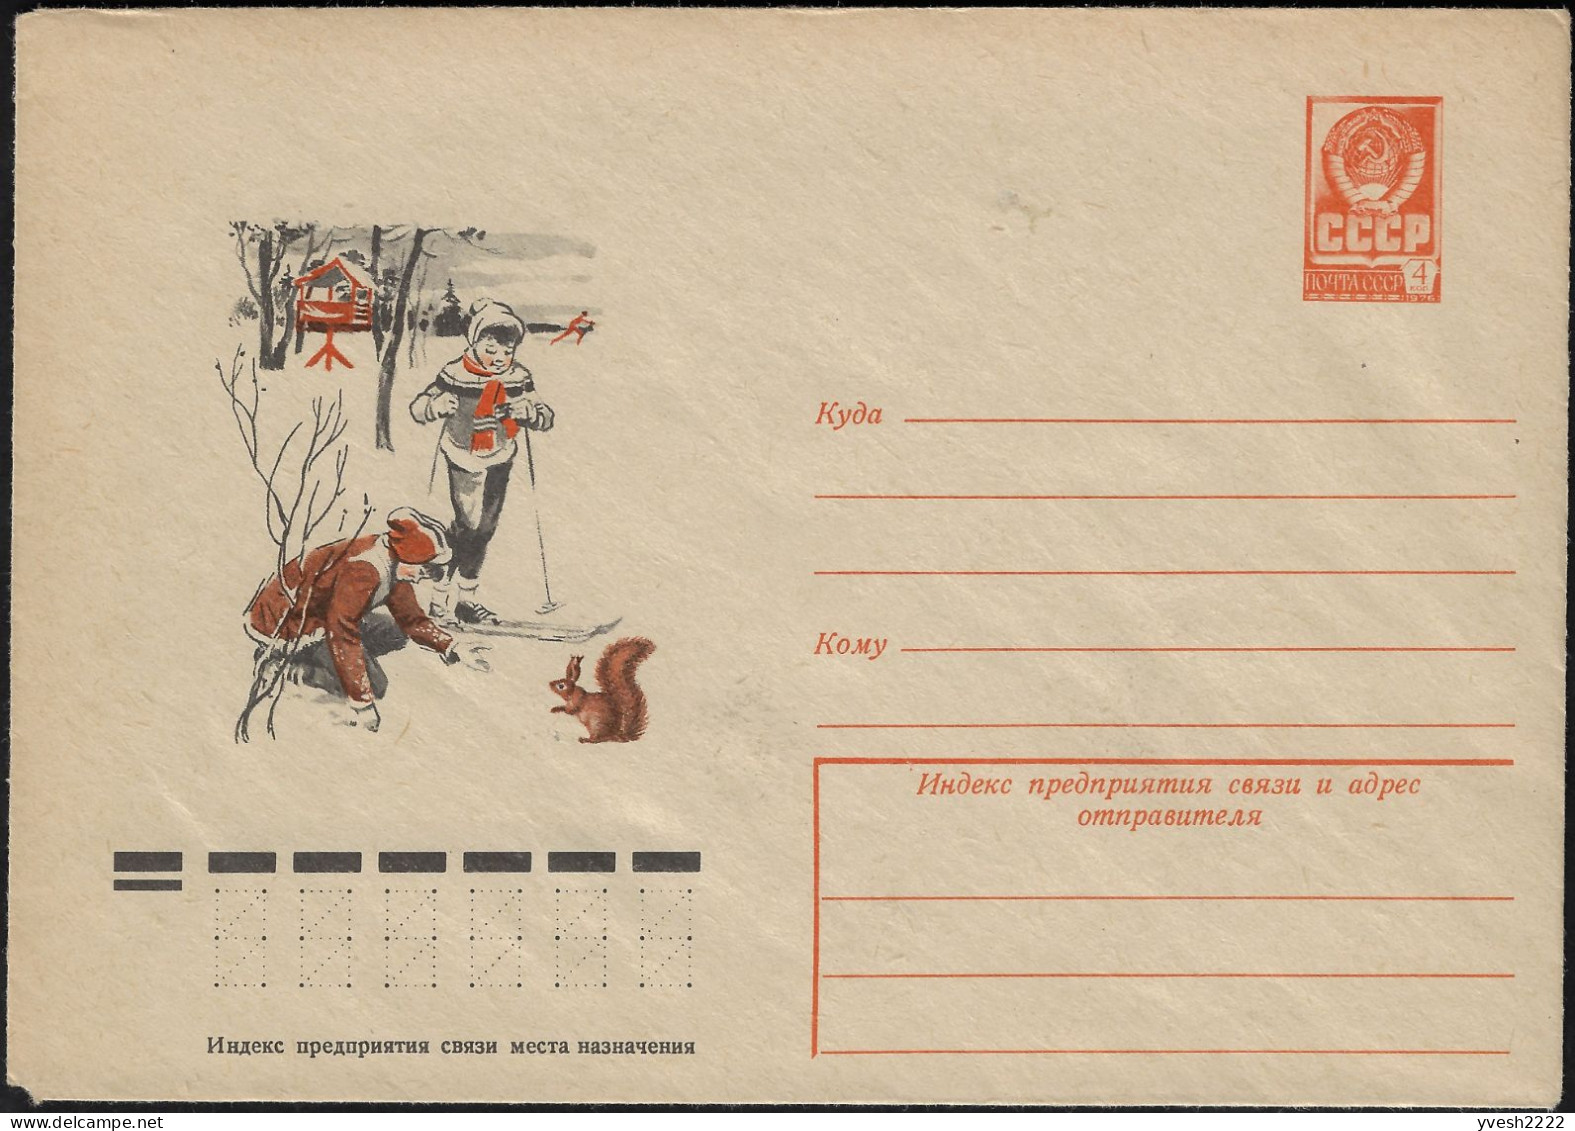 URSS 1977. Entier Postal Enveloppe. Enfants, Ski De Fond, écureuil - Roditori